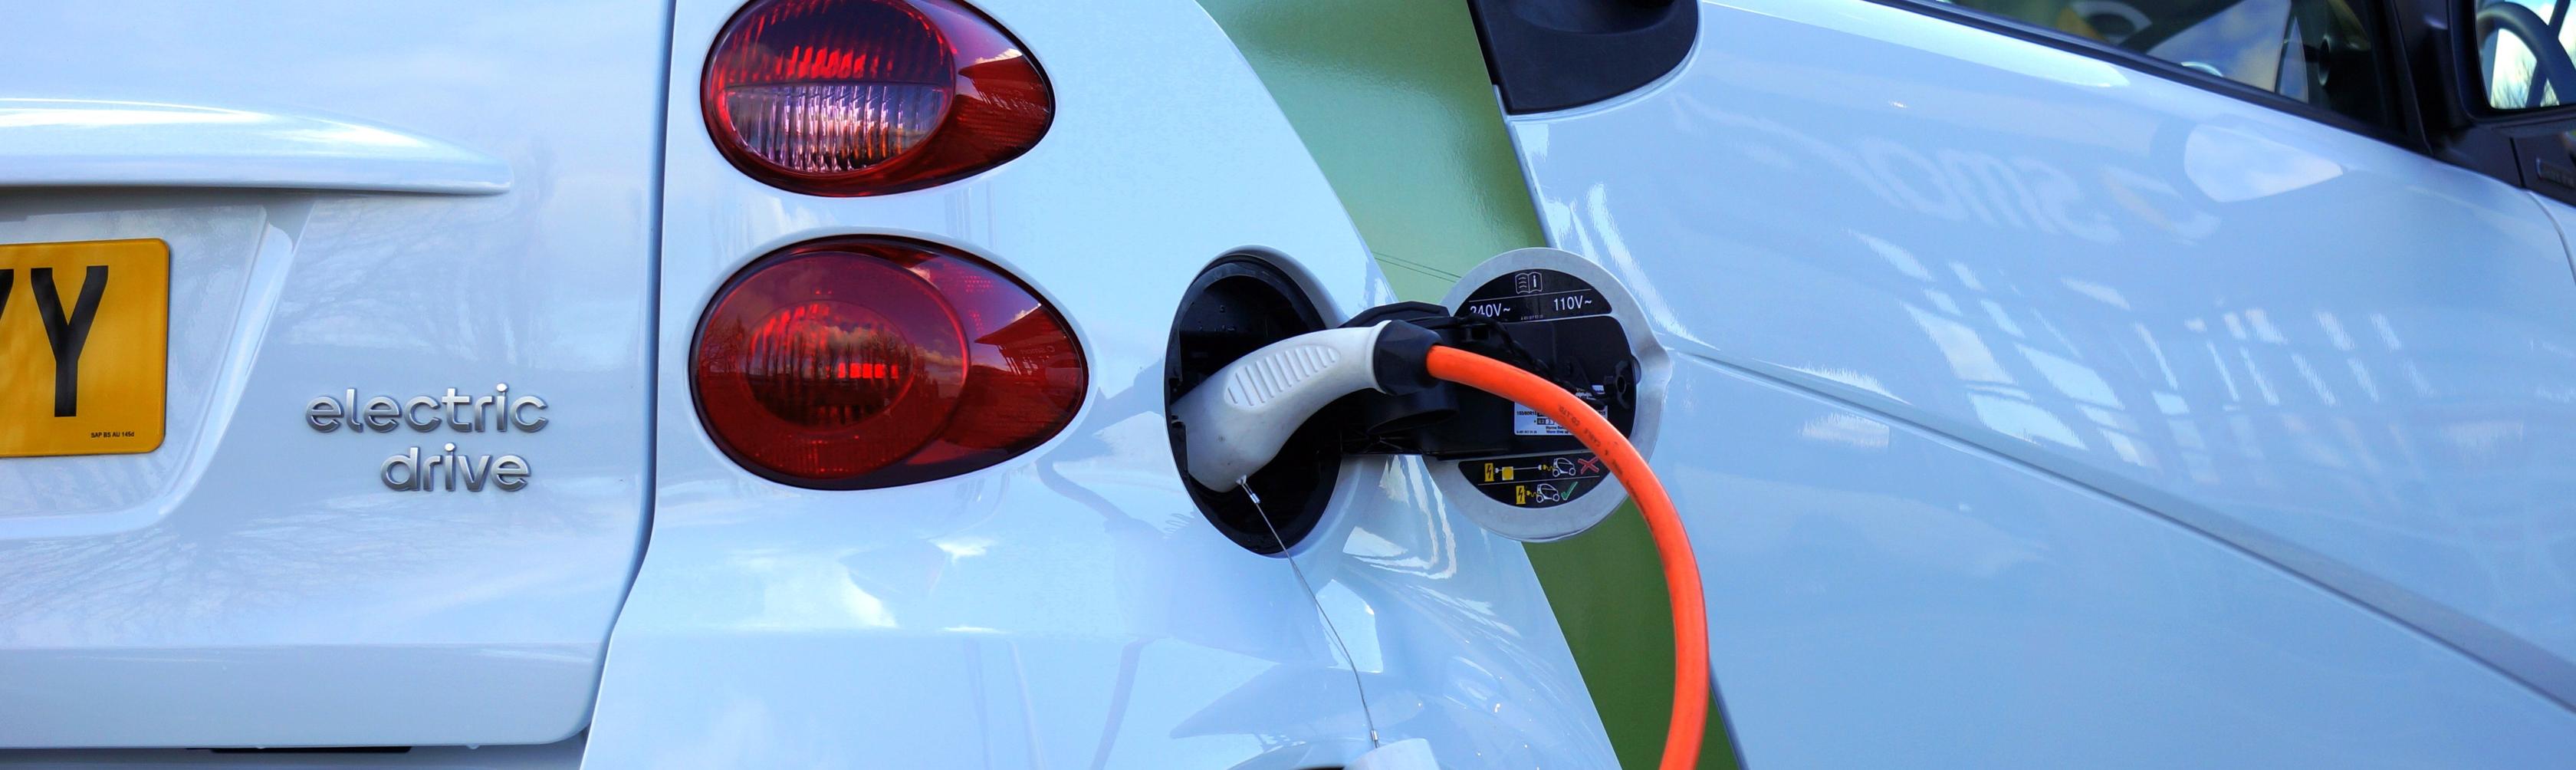 Nederland heeft de meeste oplaadpunten voor elektrische auto’s in Europa.